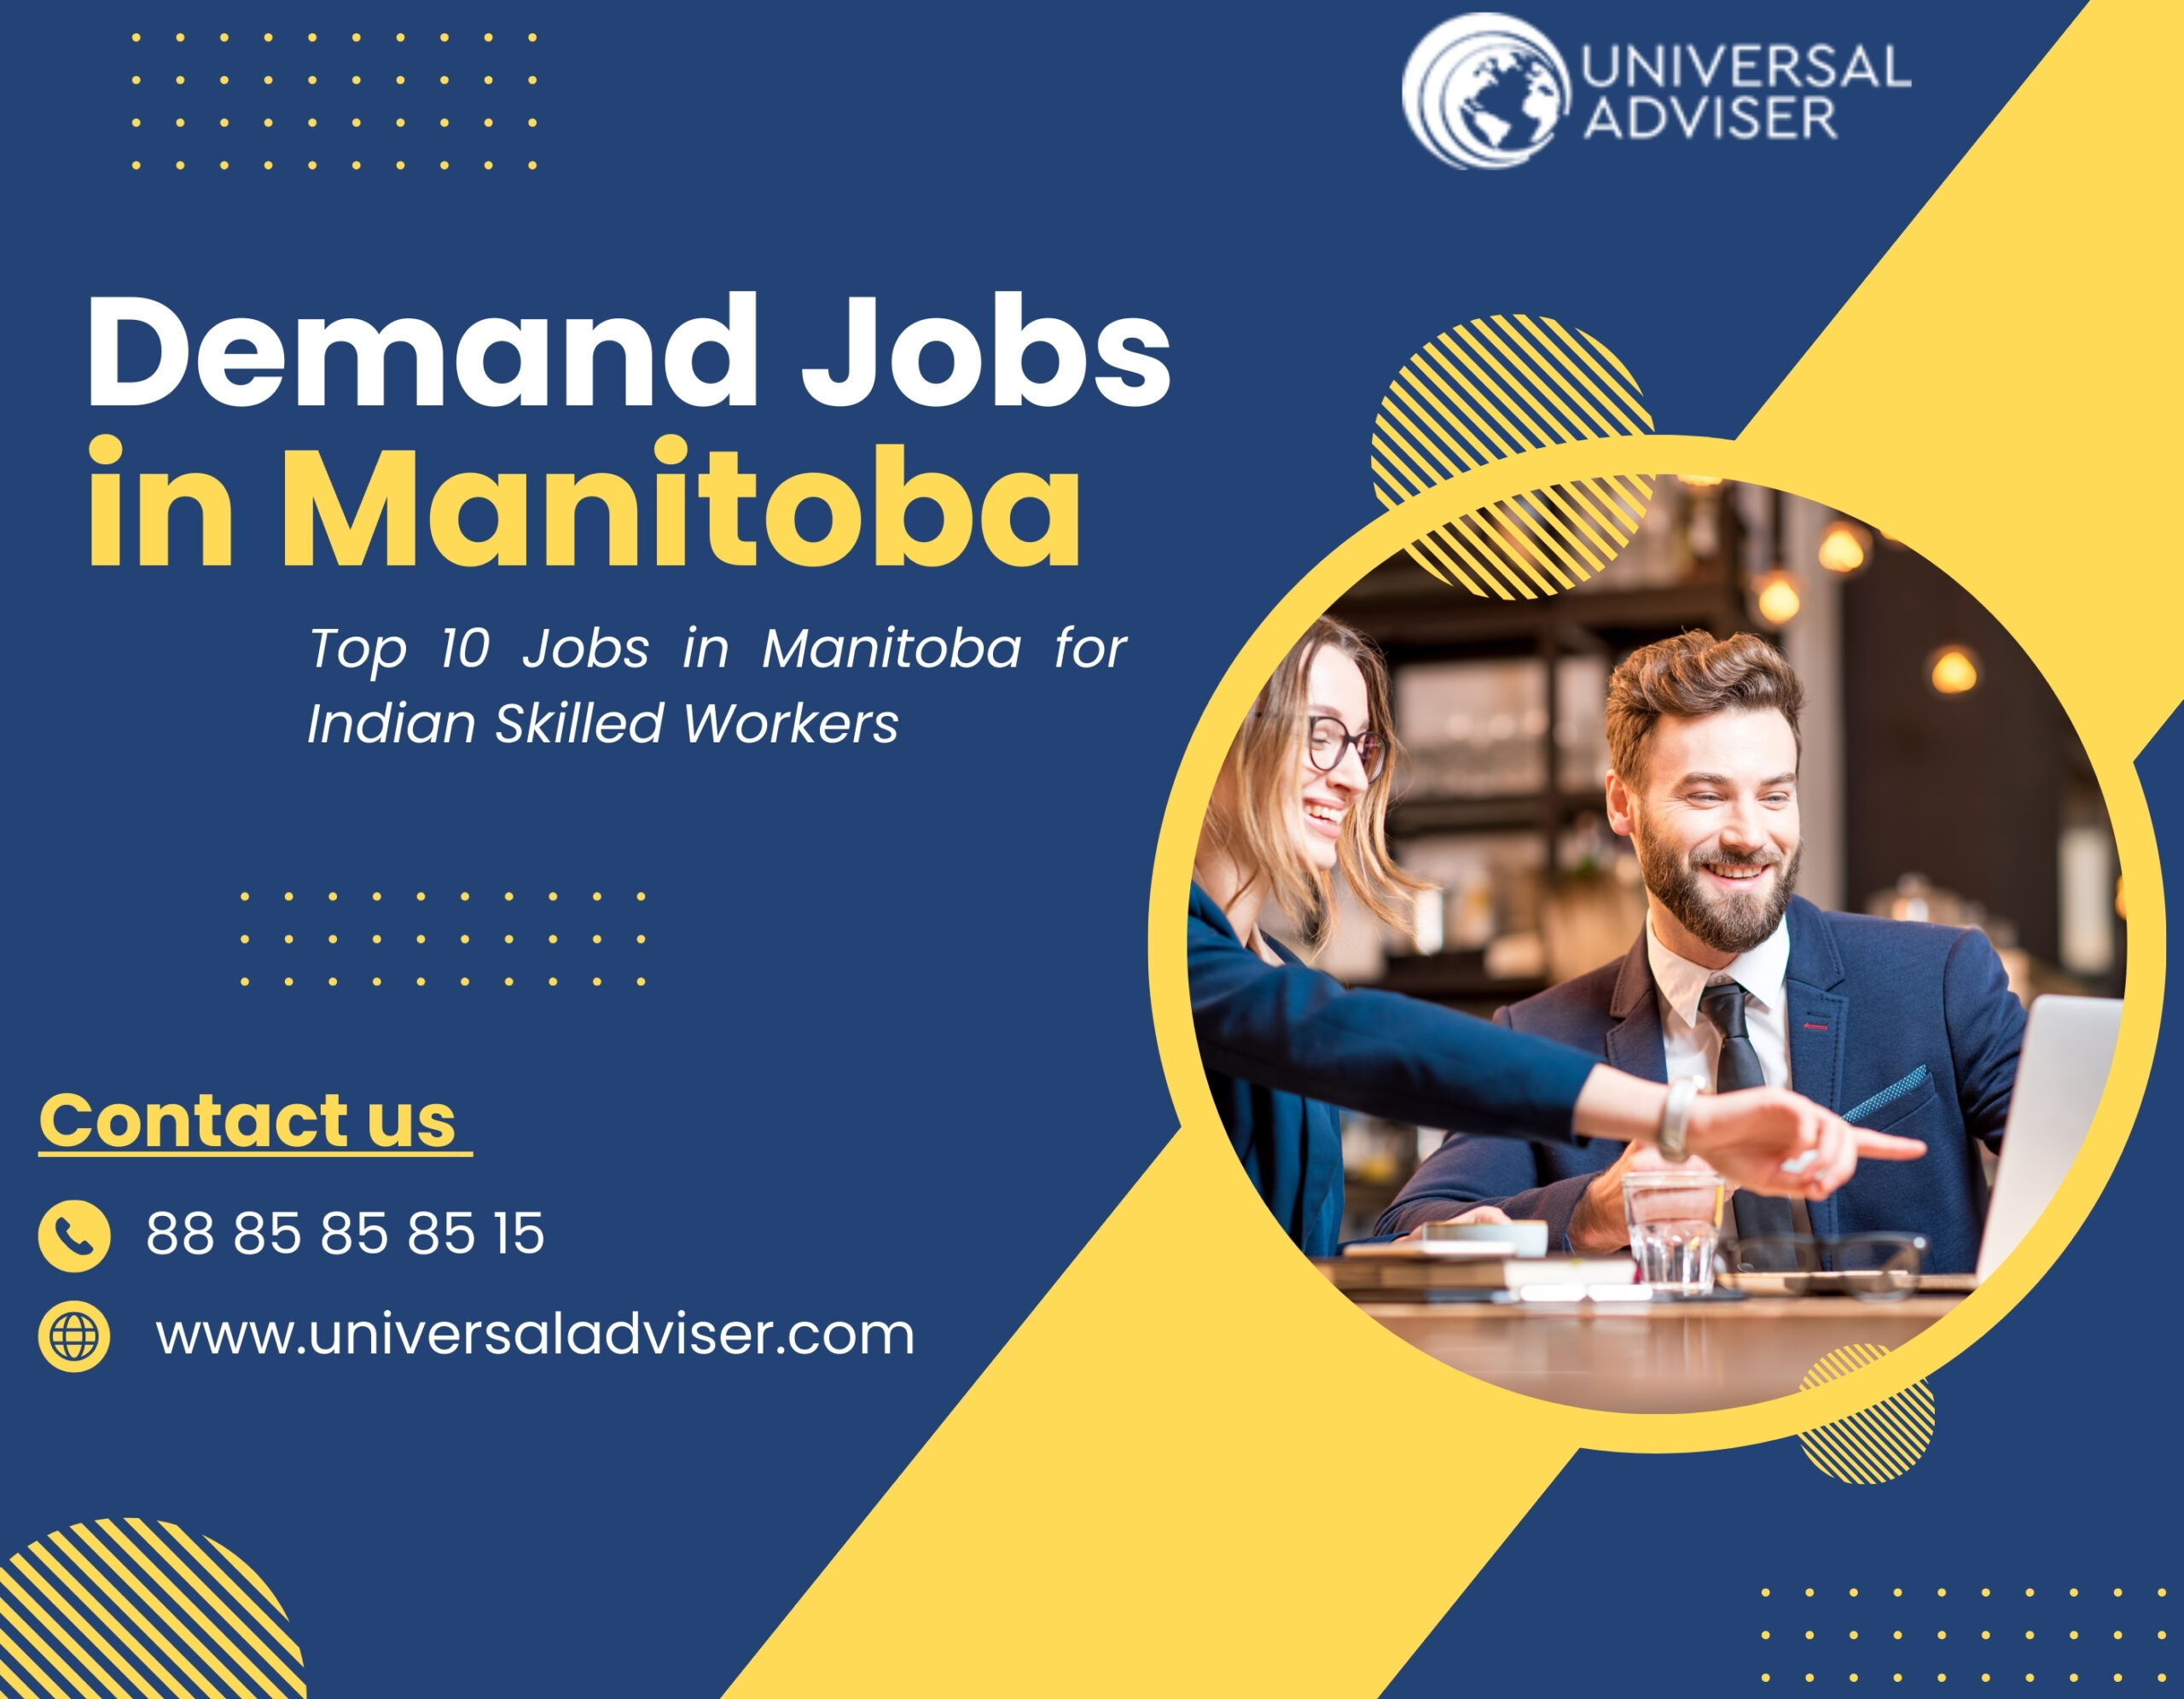 Demand jobs in Manitoba